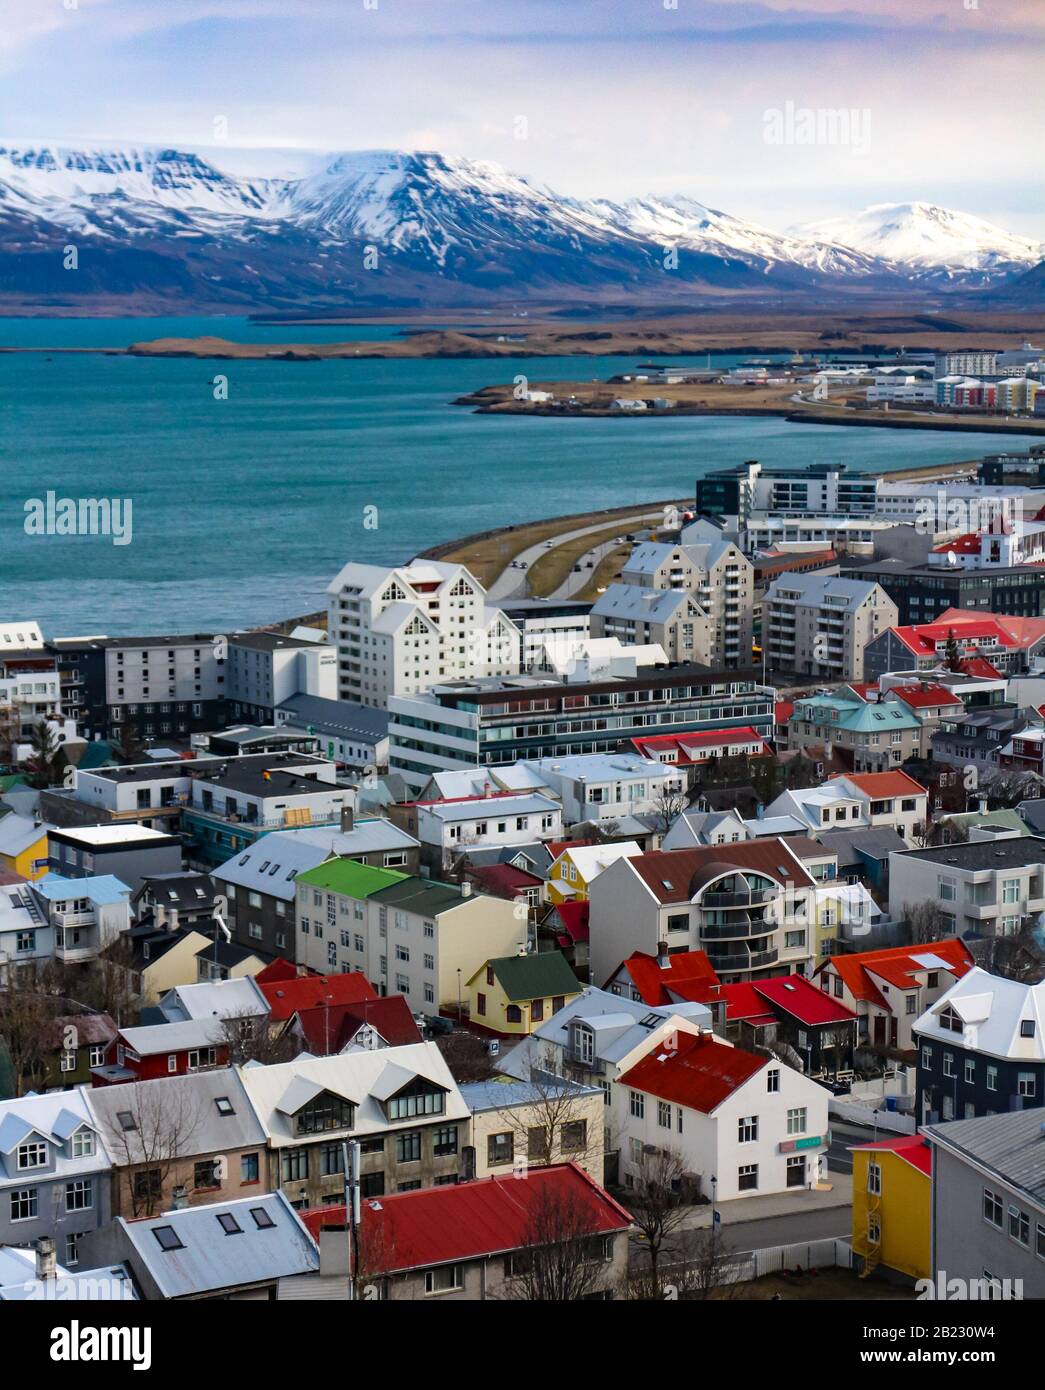 Vista de Reykjavik, capital de Islandia, vista desde Hallgrimskirkja, con el Monte Esja al fondo. Foto de stock